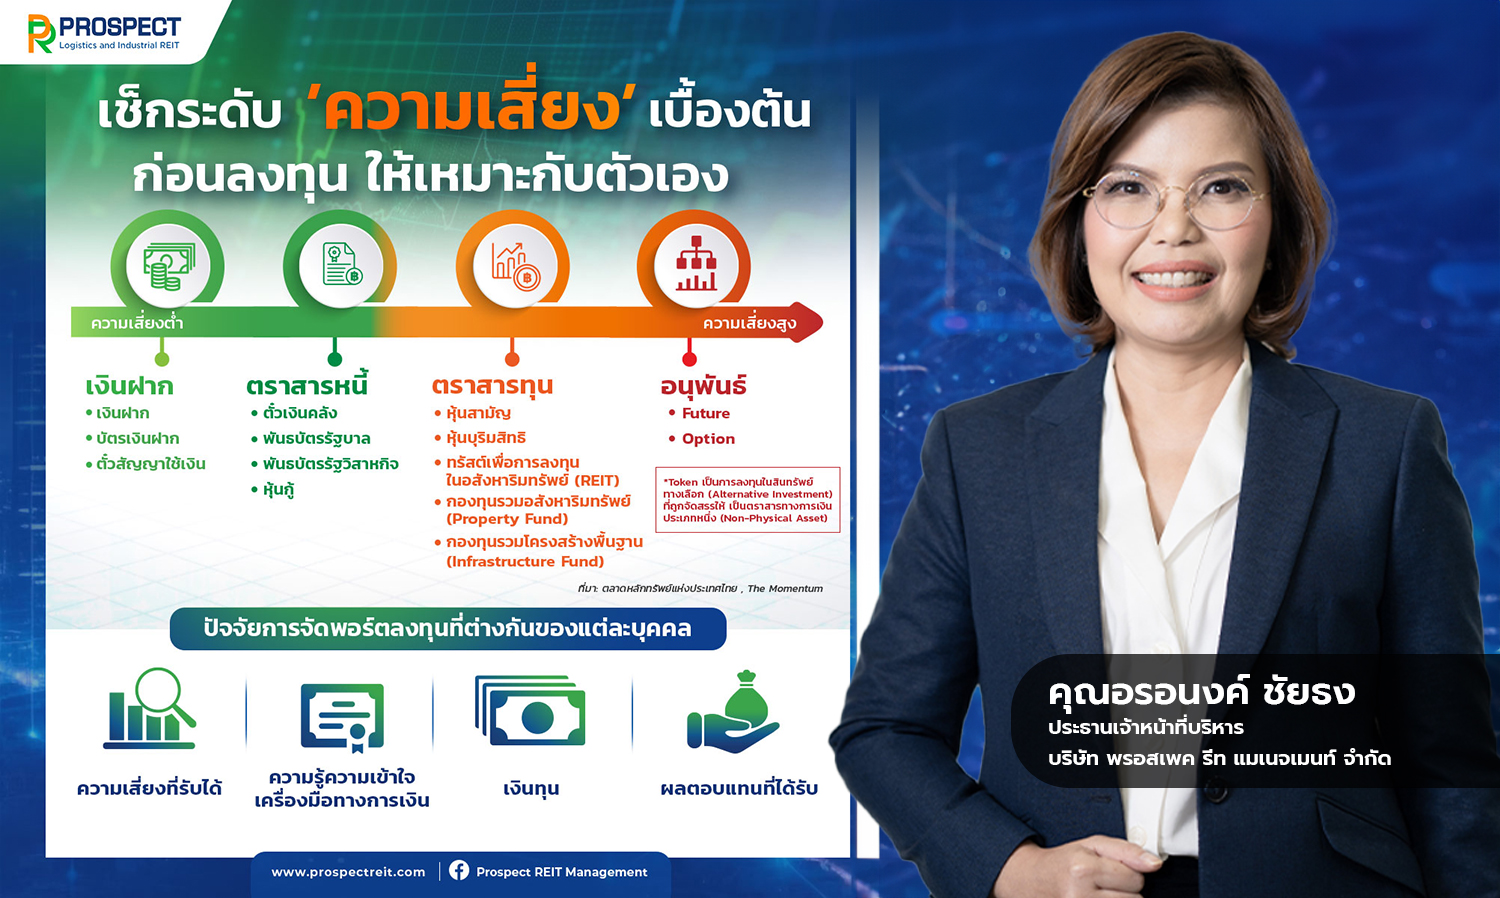 เปิดมุมมองเศรษฐกิจไทยปี 2567 และ บริหารความเสี่ยงในพอร์ตด้วย REIT อีกหนึ่งทางเลือกท่ามกลางตลาดผันผวน